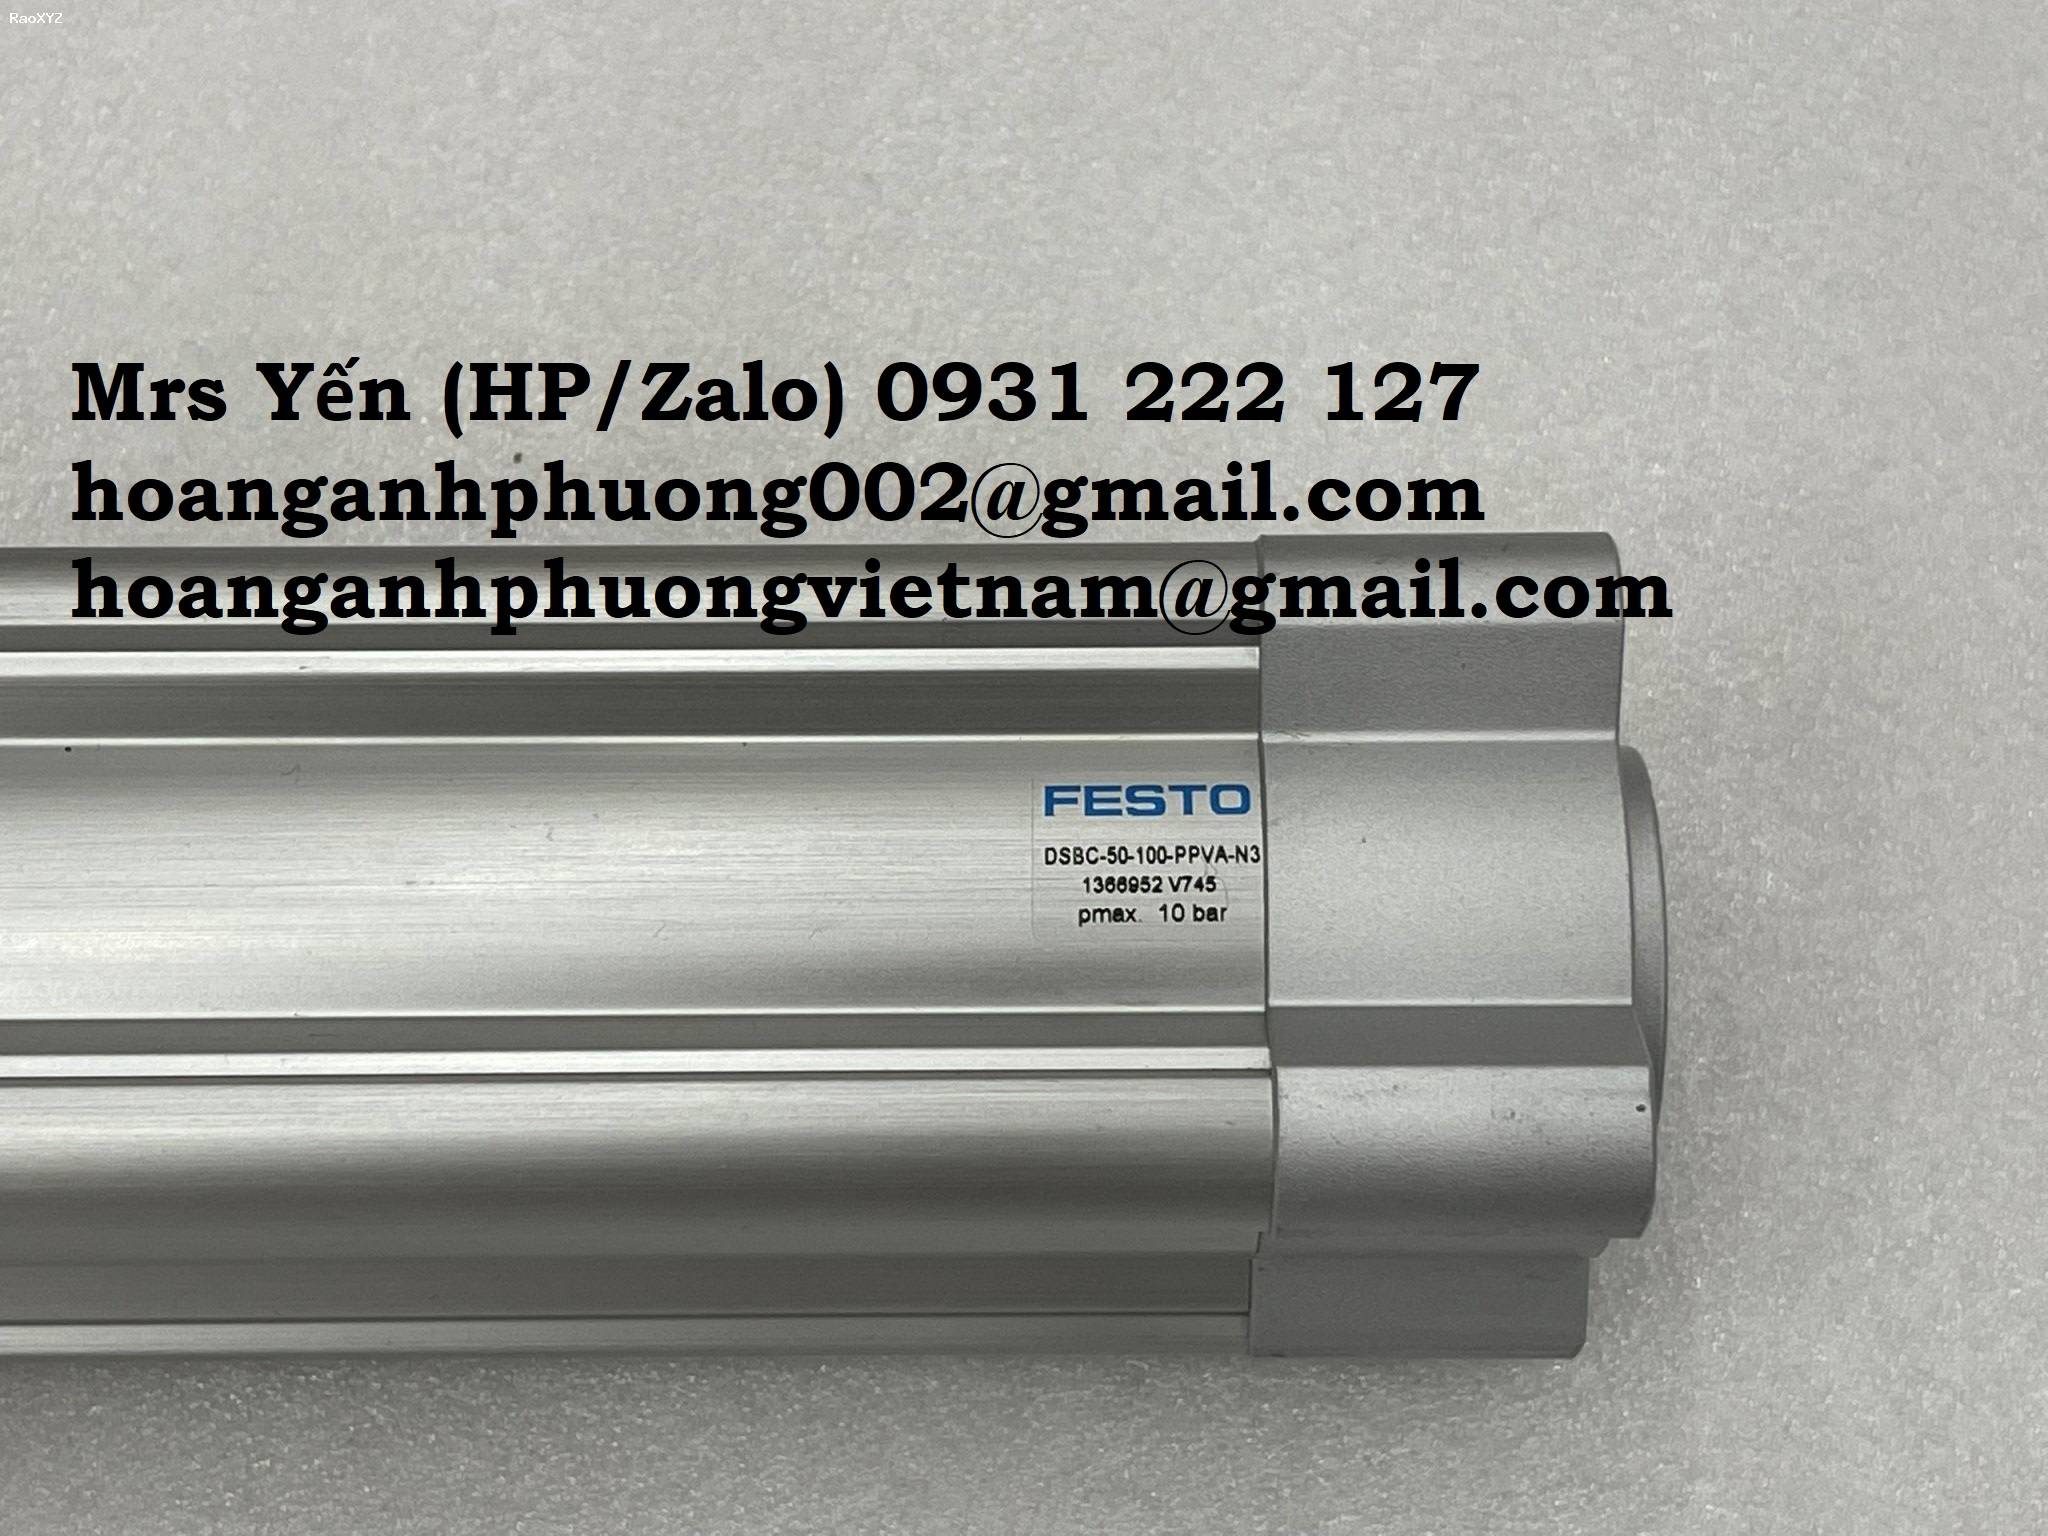 Xy lanh Festo DSBC-50-100-PPVA-N3 nhập khẩu mới 100%